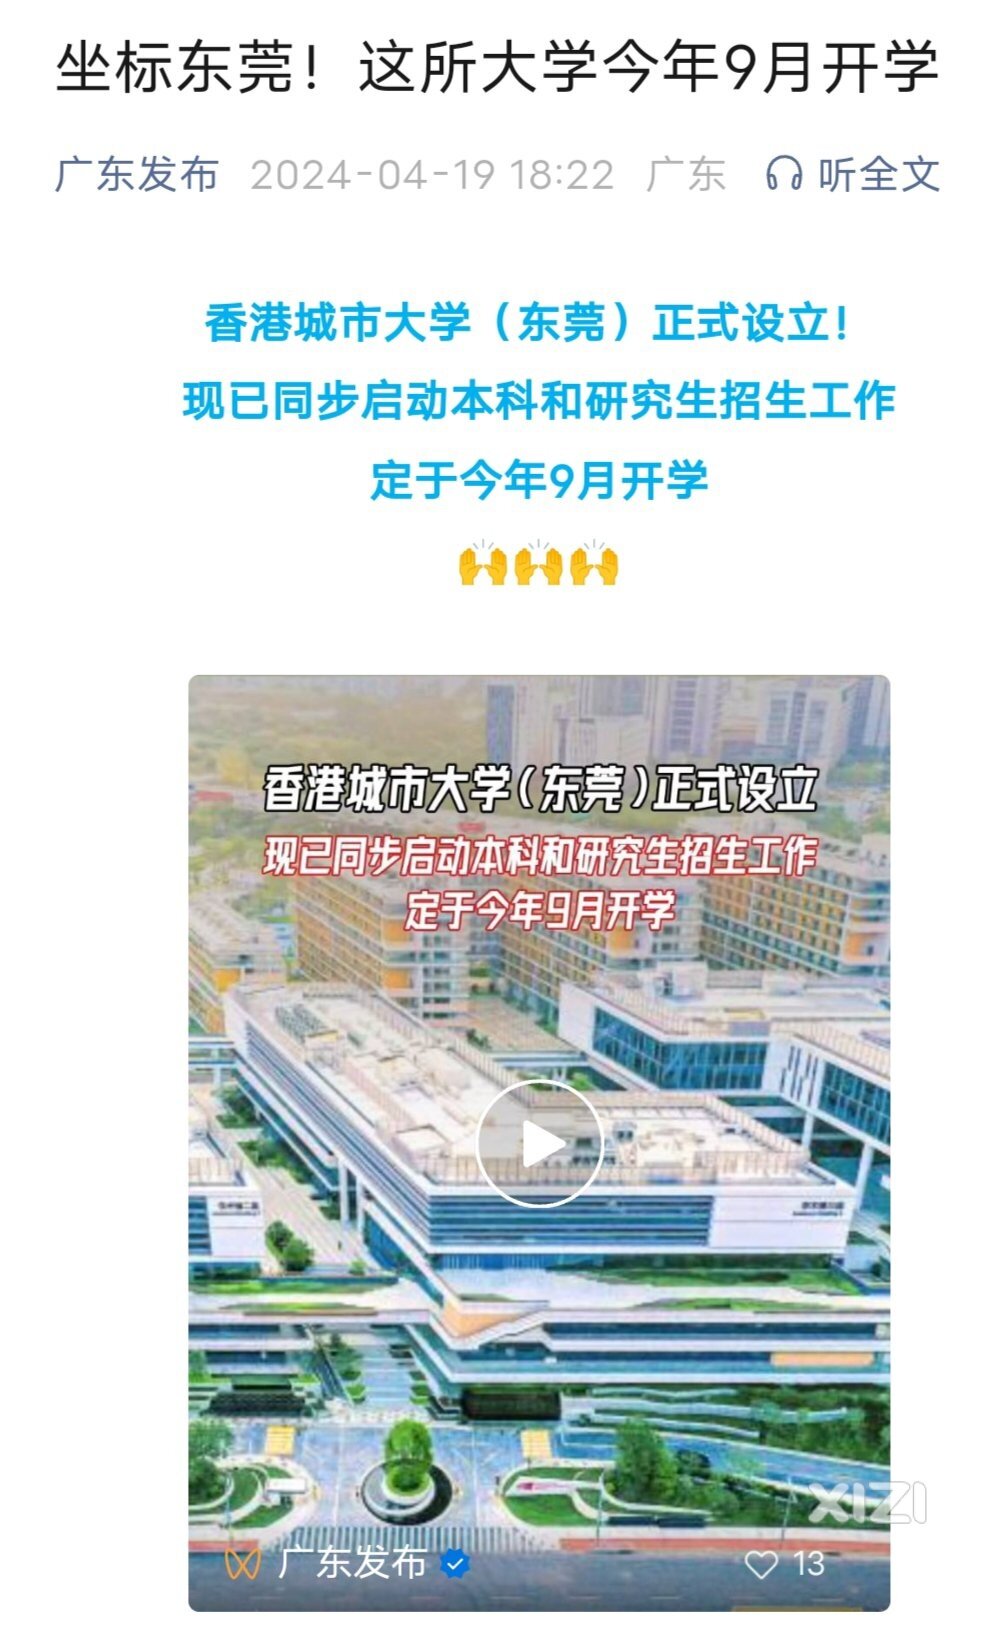 当年说要建在惠州潼湖的东莞这所香港大学。2024九月份开始招生了